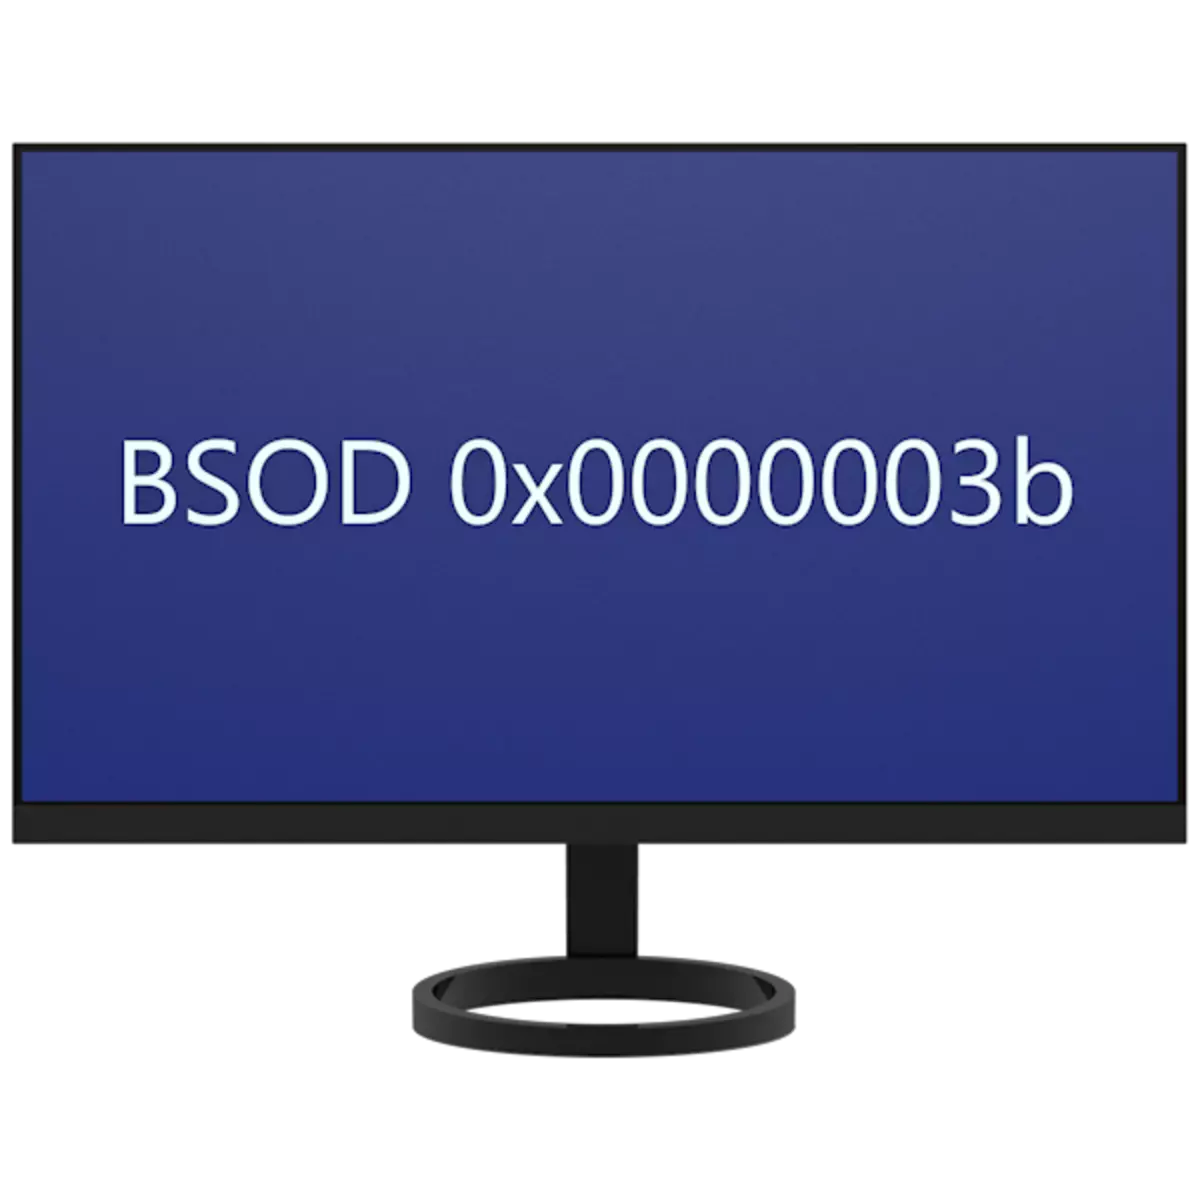 Solución de error 0x0000003b en Windows 7 x64